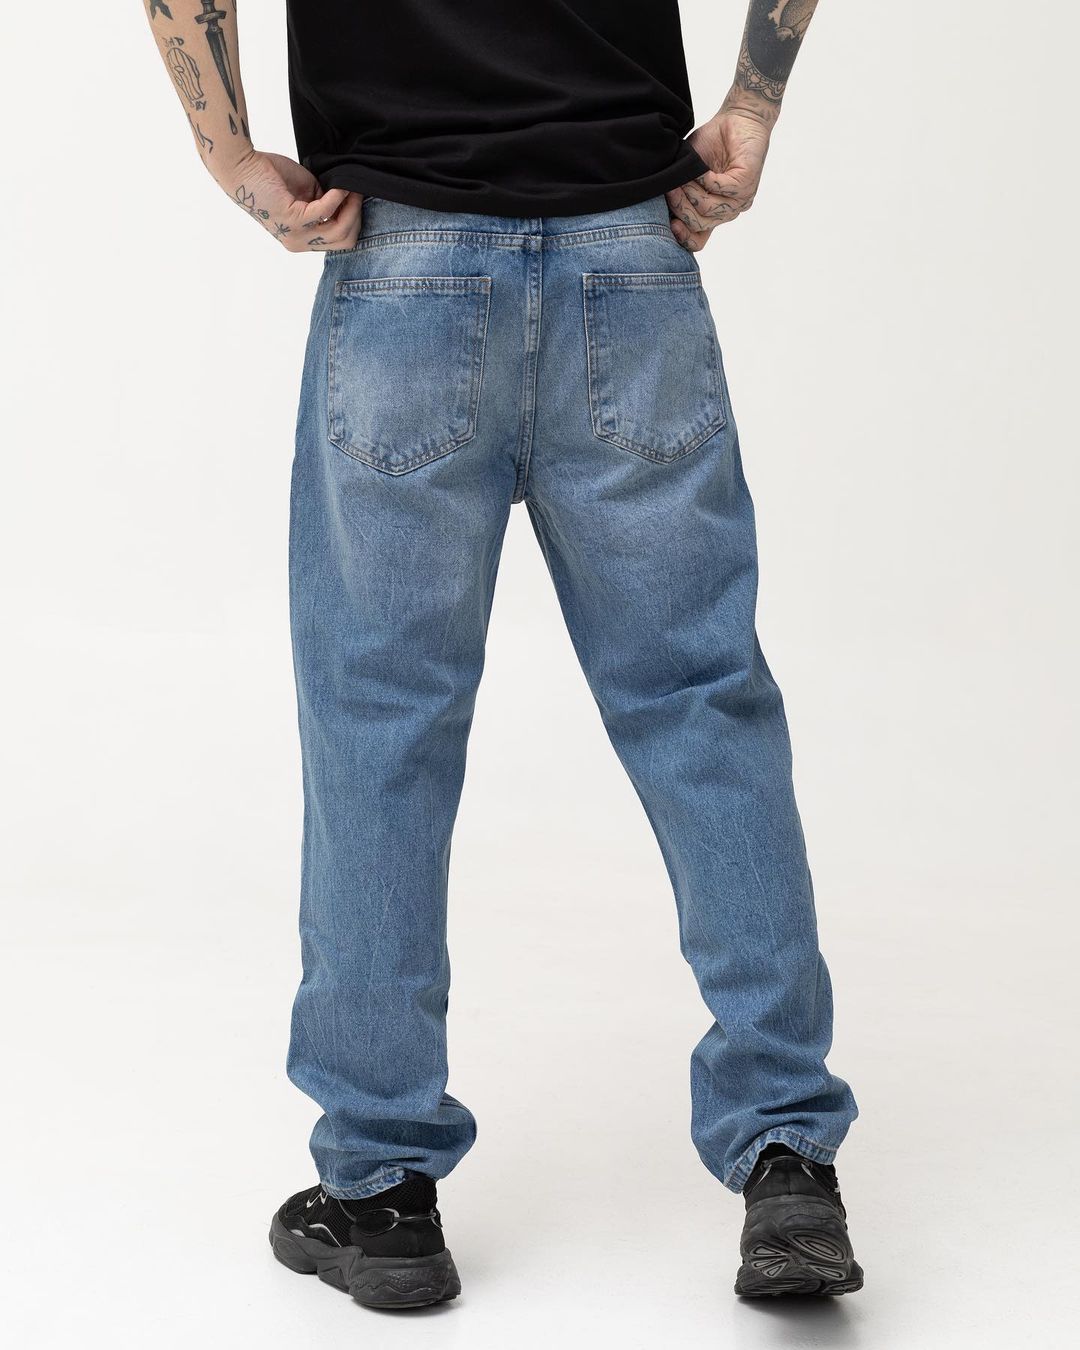 Чоловічі сині джинси BEZET базові з перфорацією - Фото 1